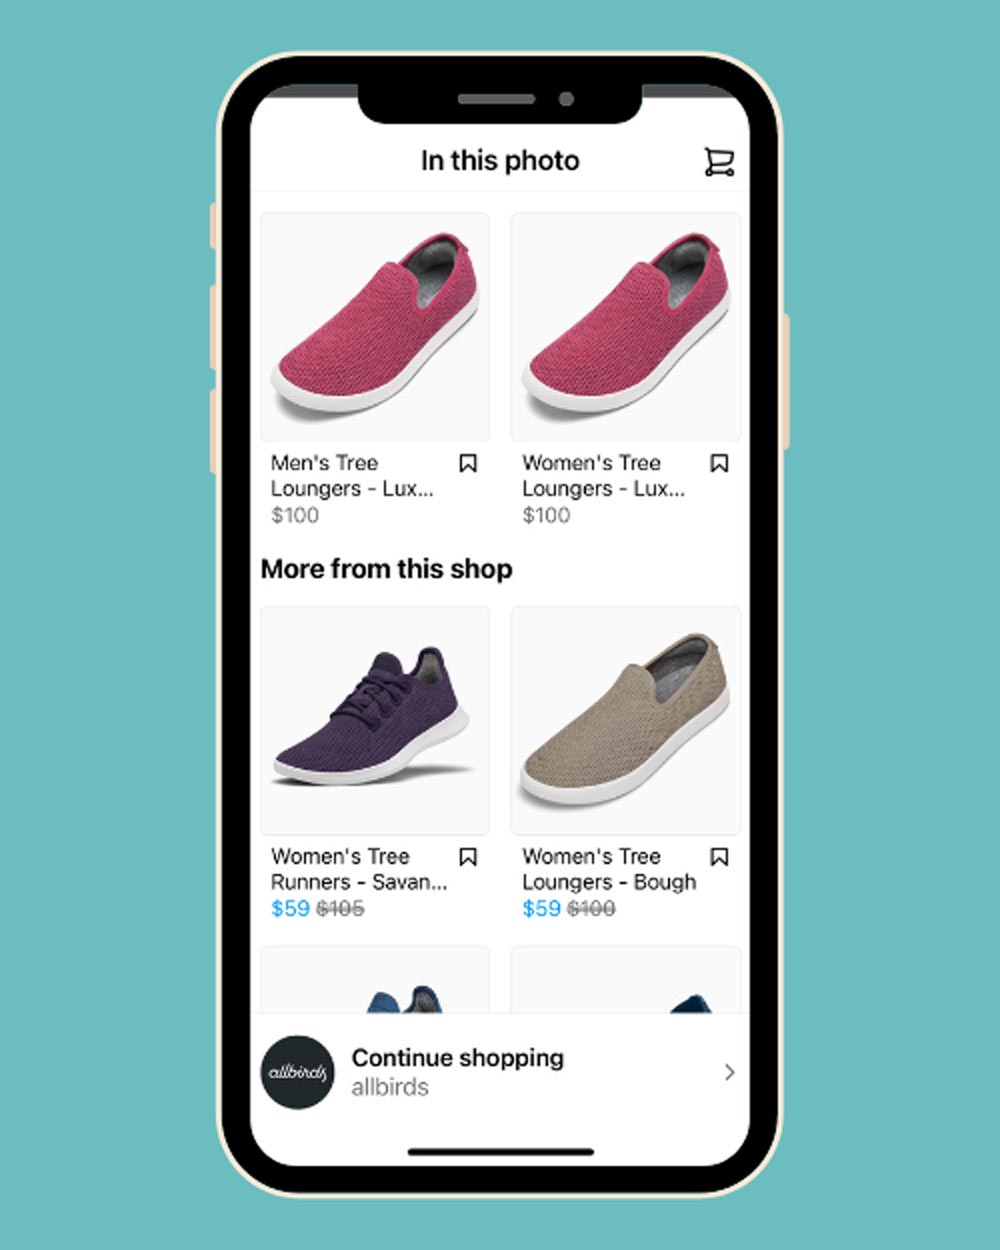 در پست قابلیت خرید از اینستاگرام 4 کفش مردانه و زنانه به همراه اطلاعات قیمت و سایر جزئیات